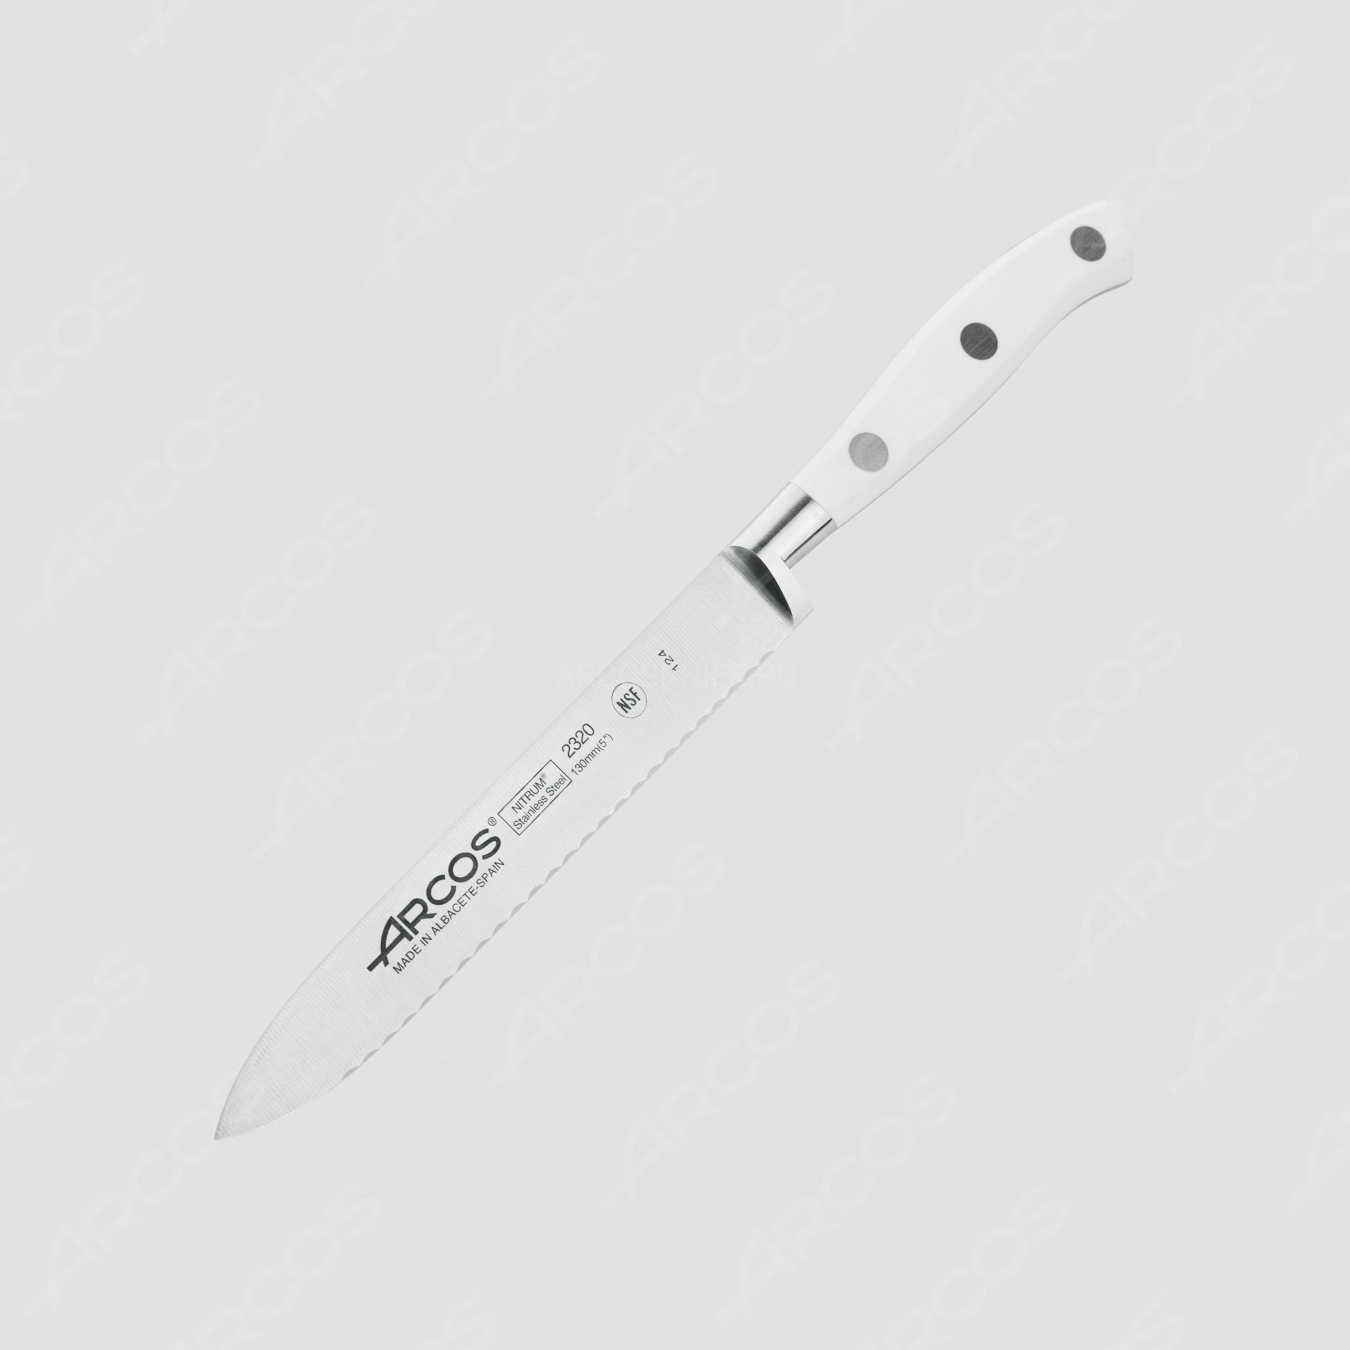 Нож кухонный для томатов 13 см, серия Riviera Blanca, ARCOS, Испания